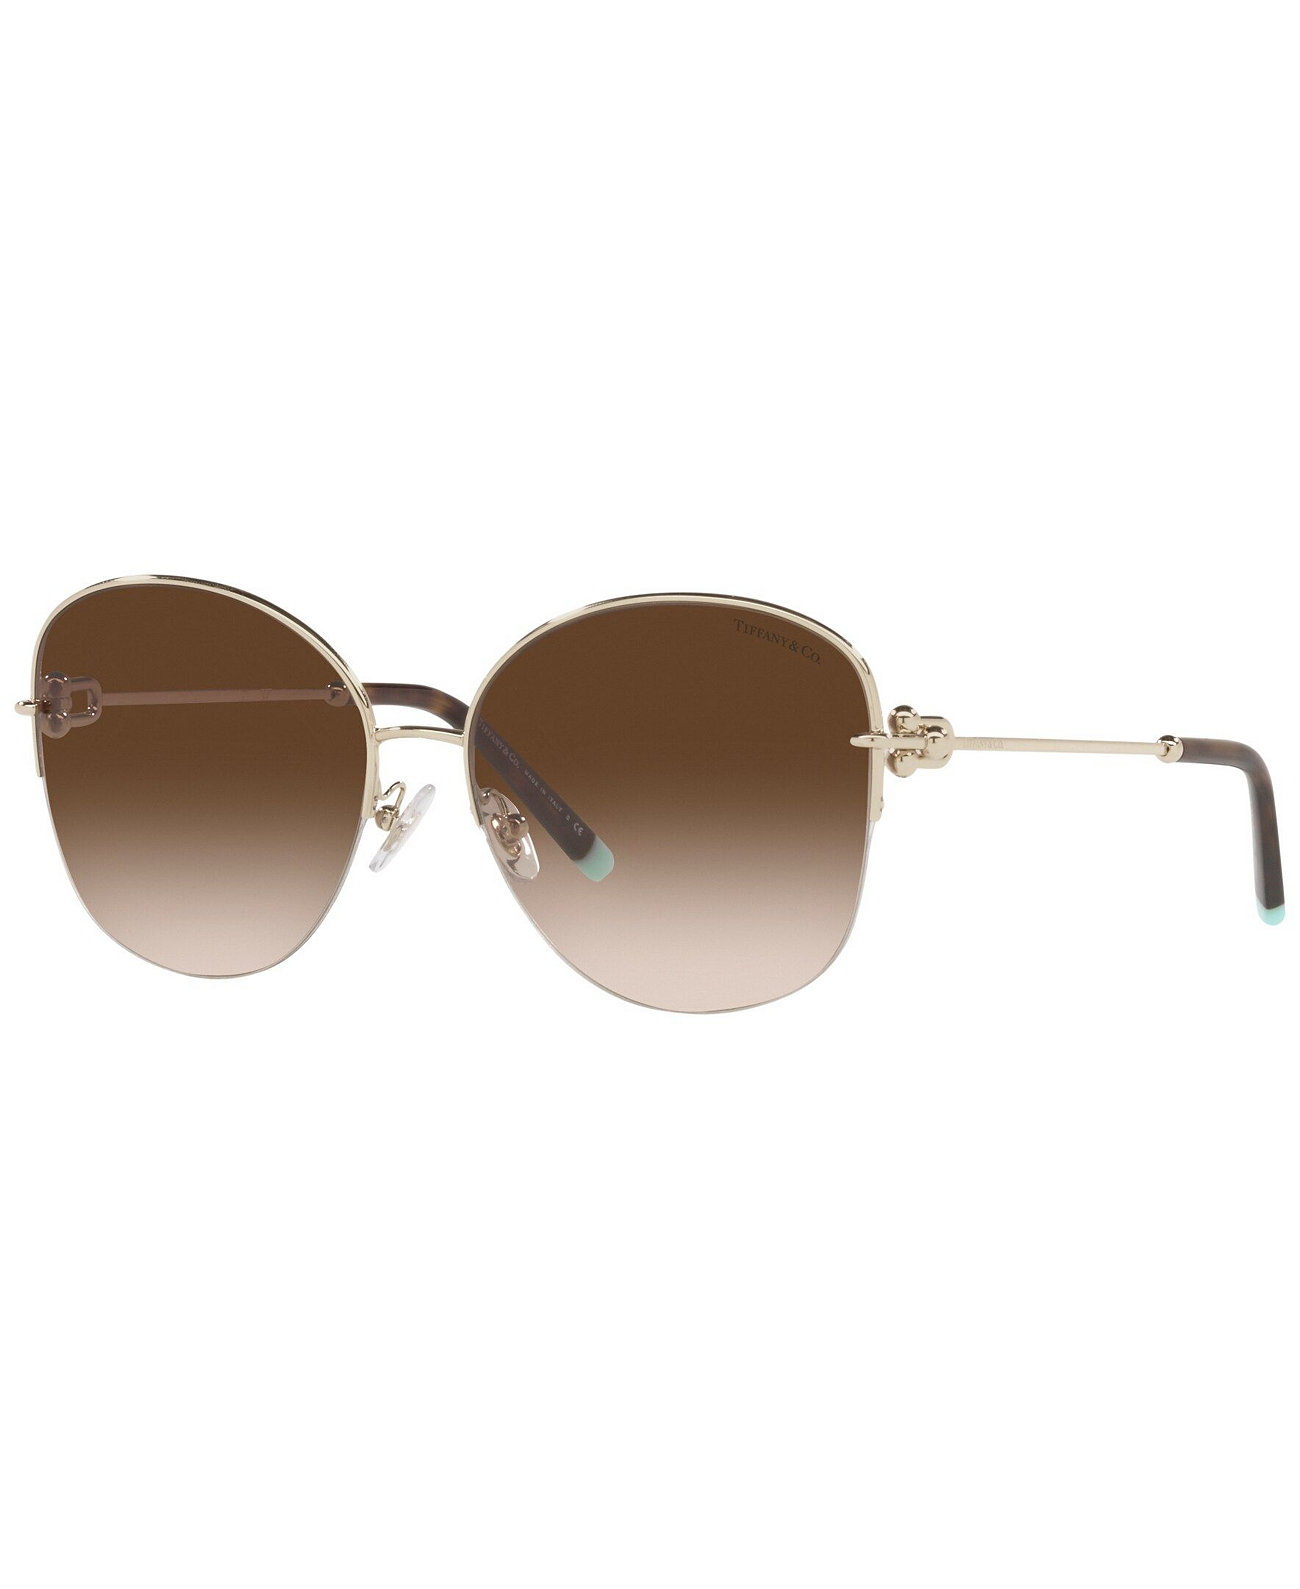 Women's Sunglasses, TF3082 58 Tiffany & Co.